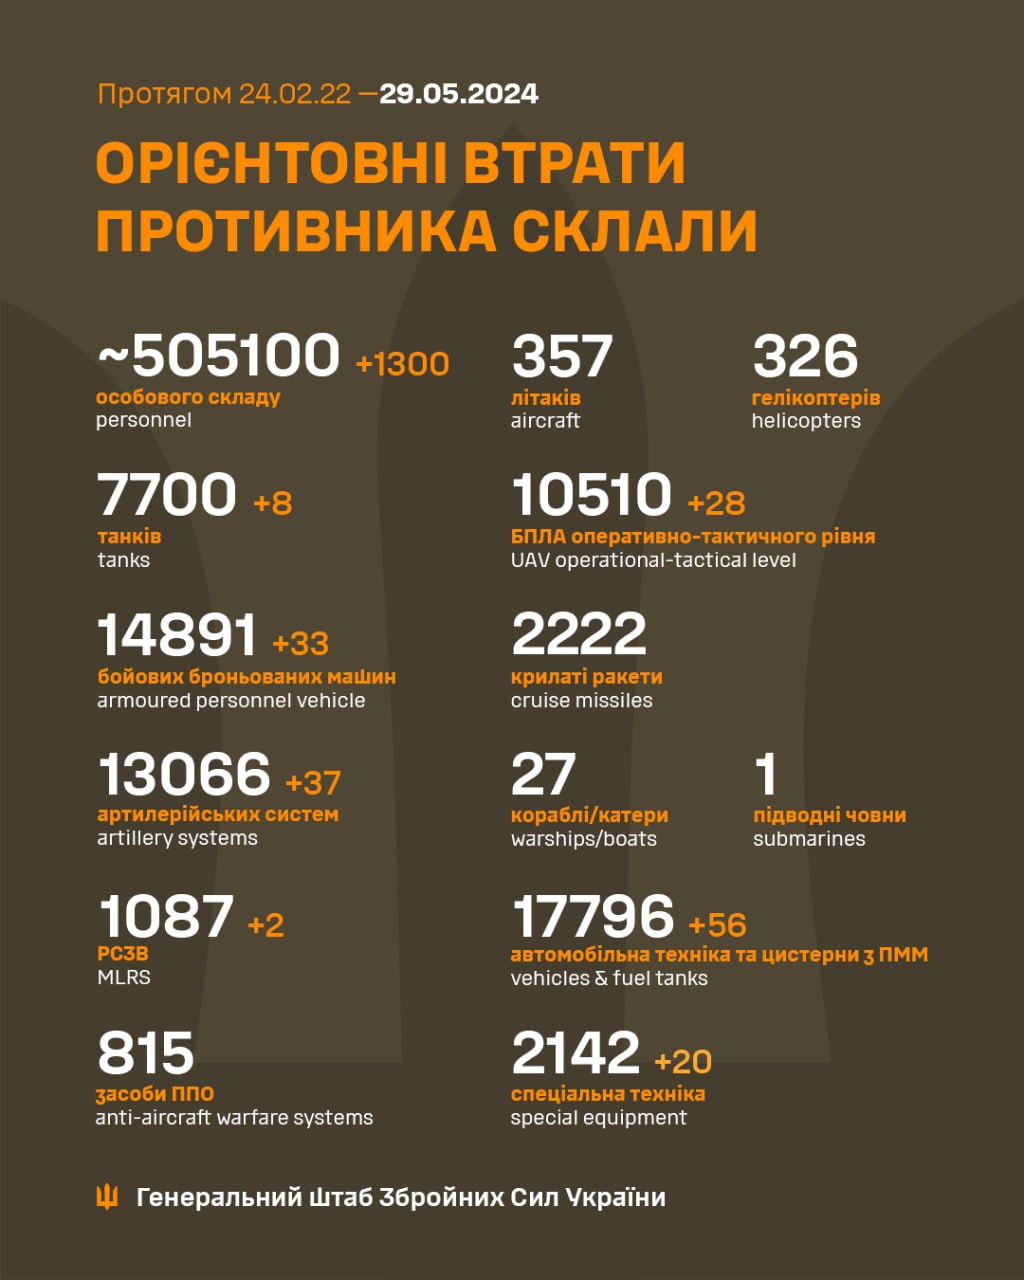 Ще 1300 загарбників і 37 артсистем. Генштаб оновив втрати РФ в Україні